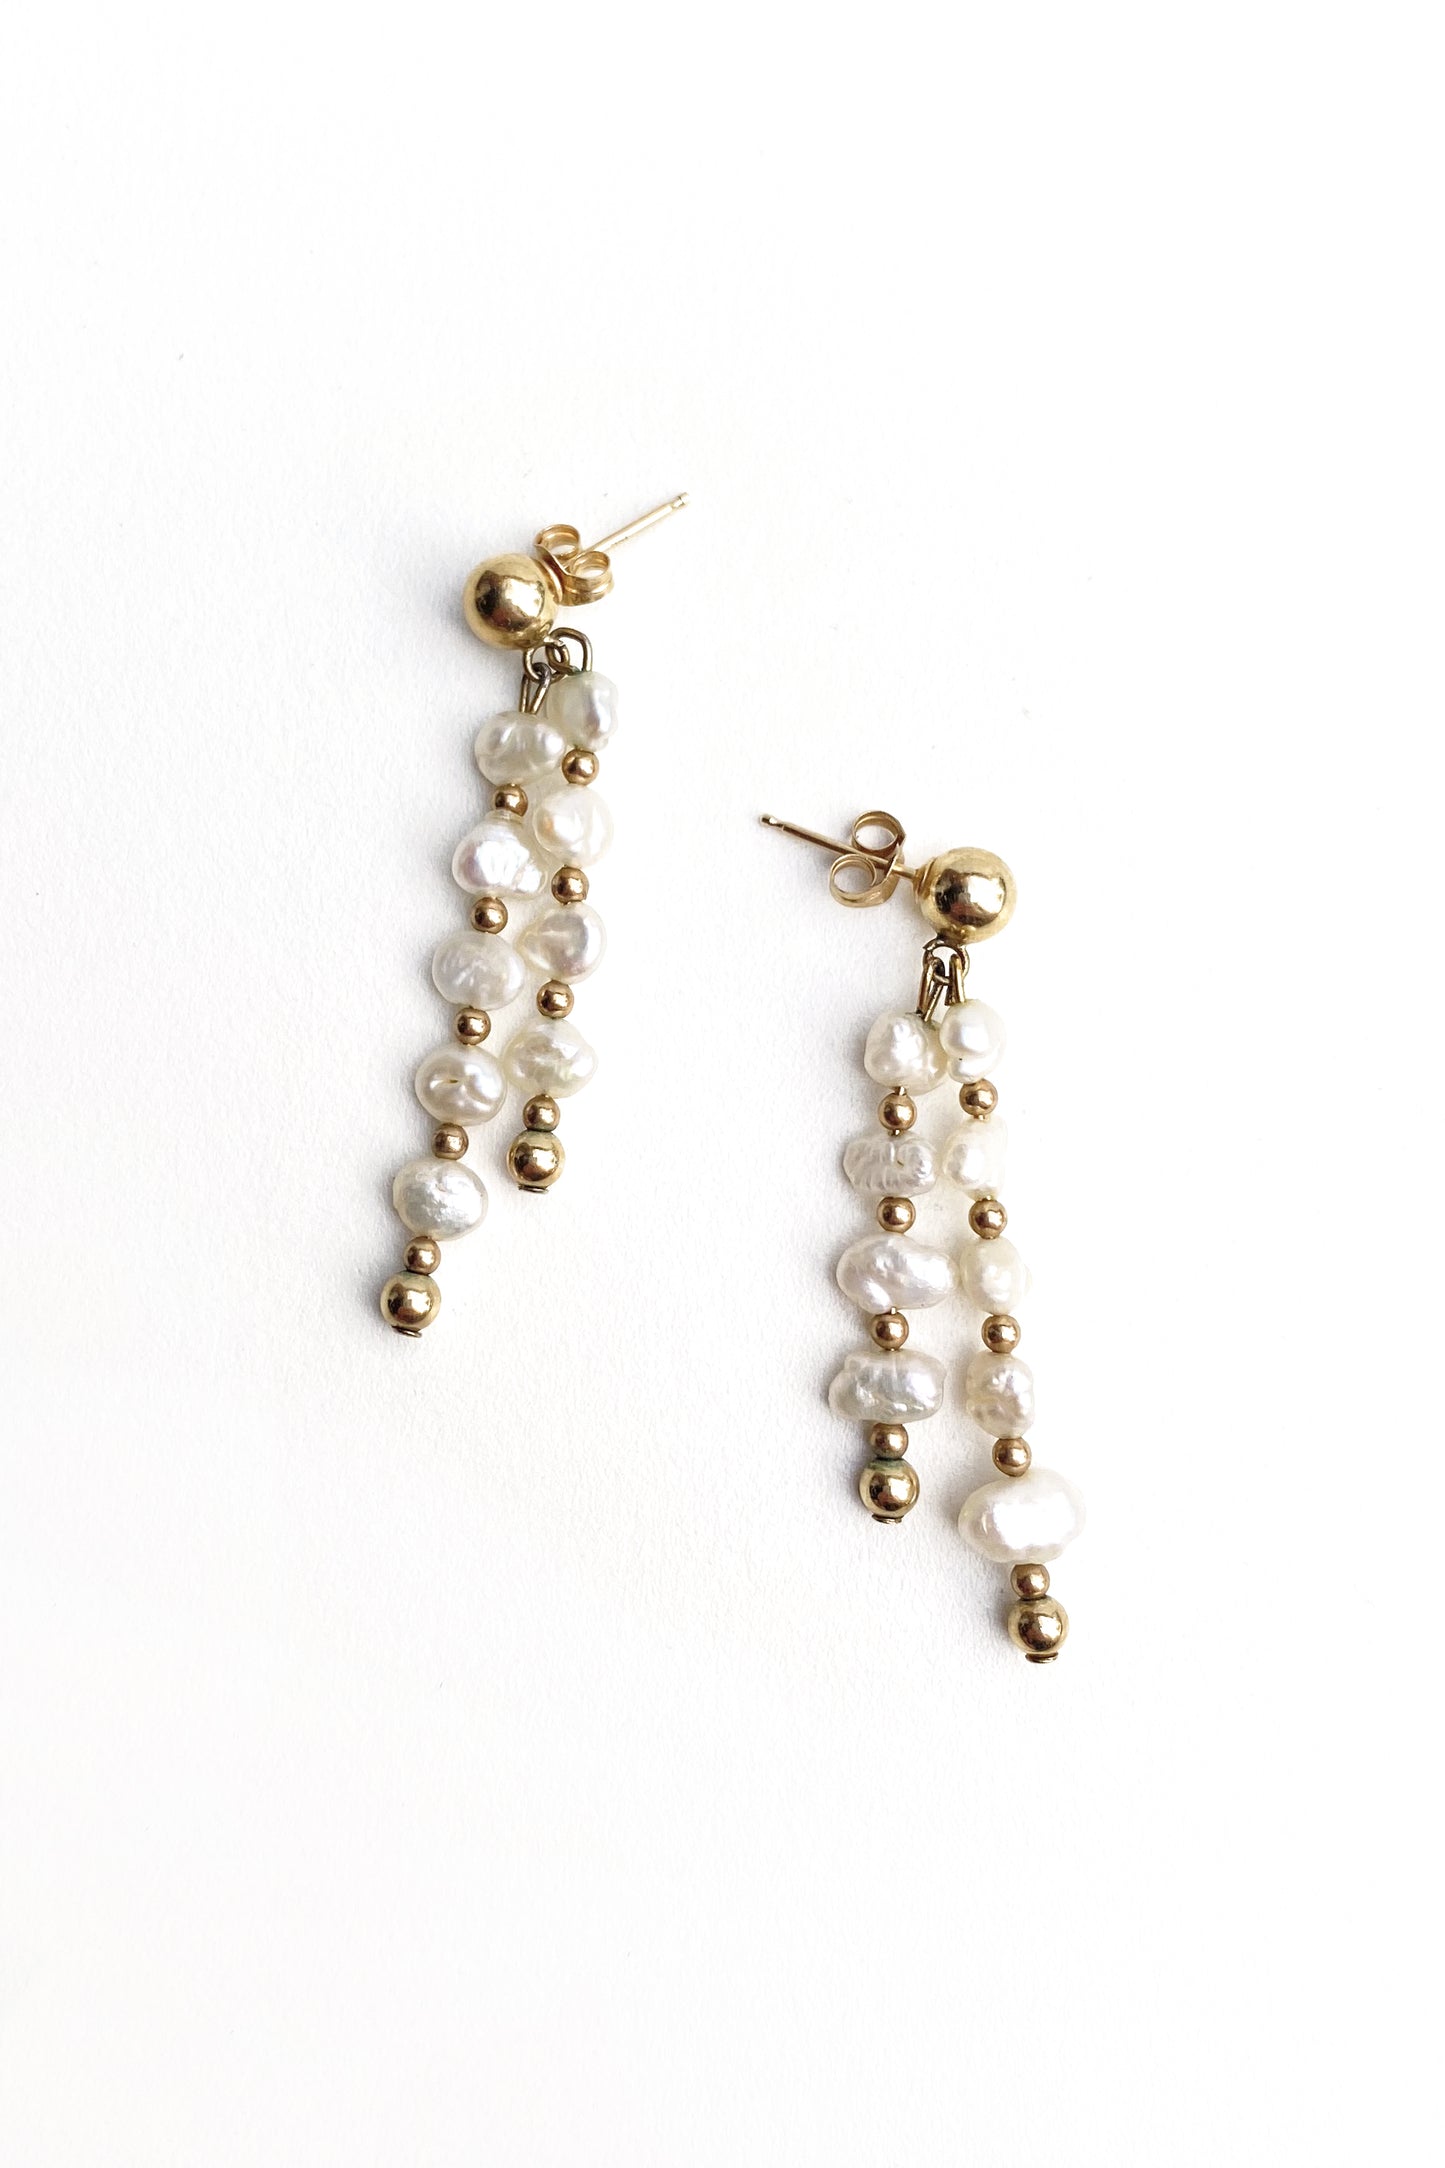 Delicate freshwater drop earrings